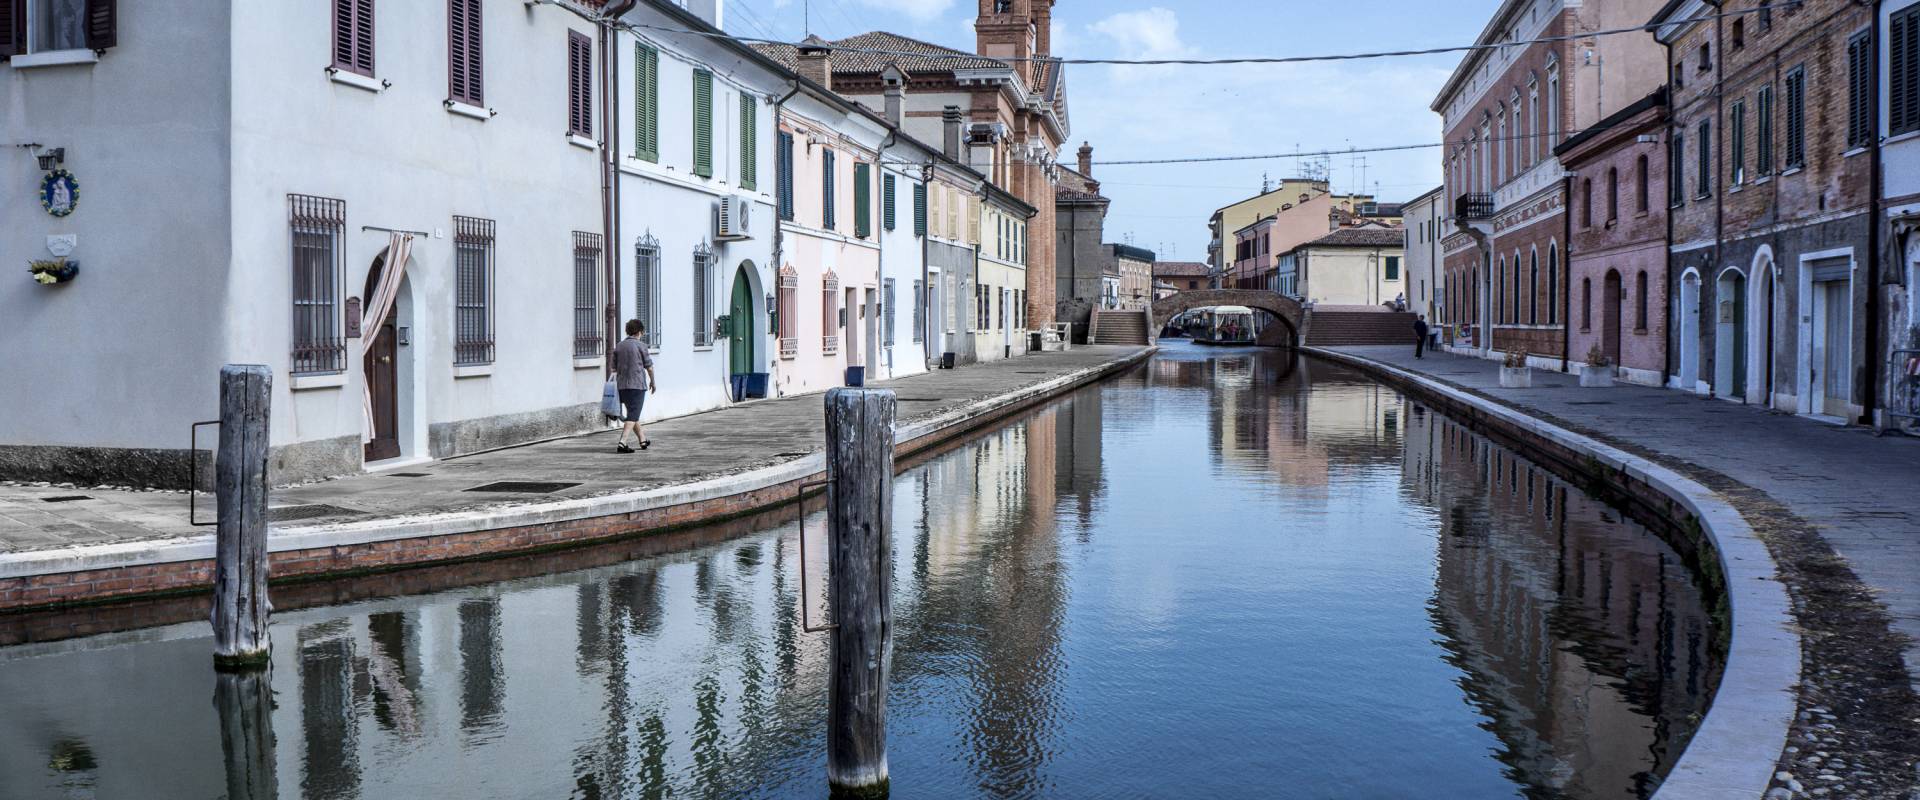 Comacchio, via Agatopisto photo by Vanni Lazzari